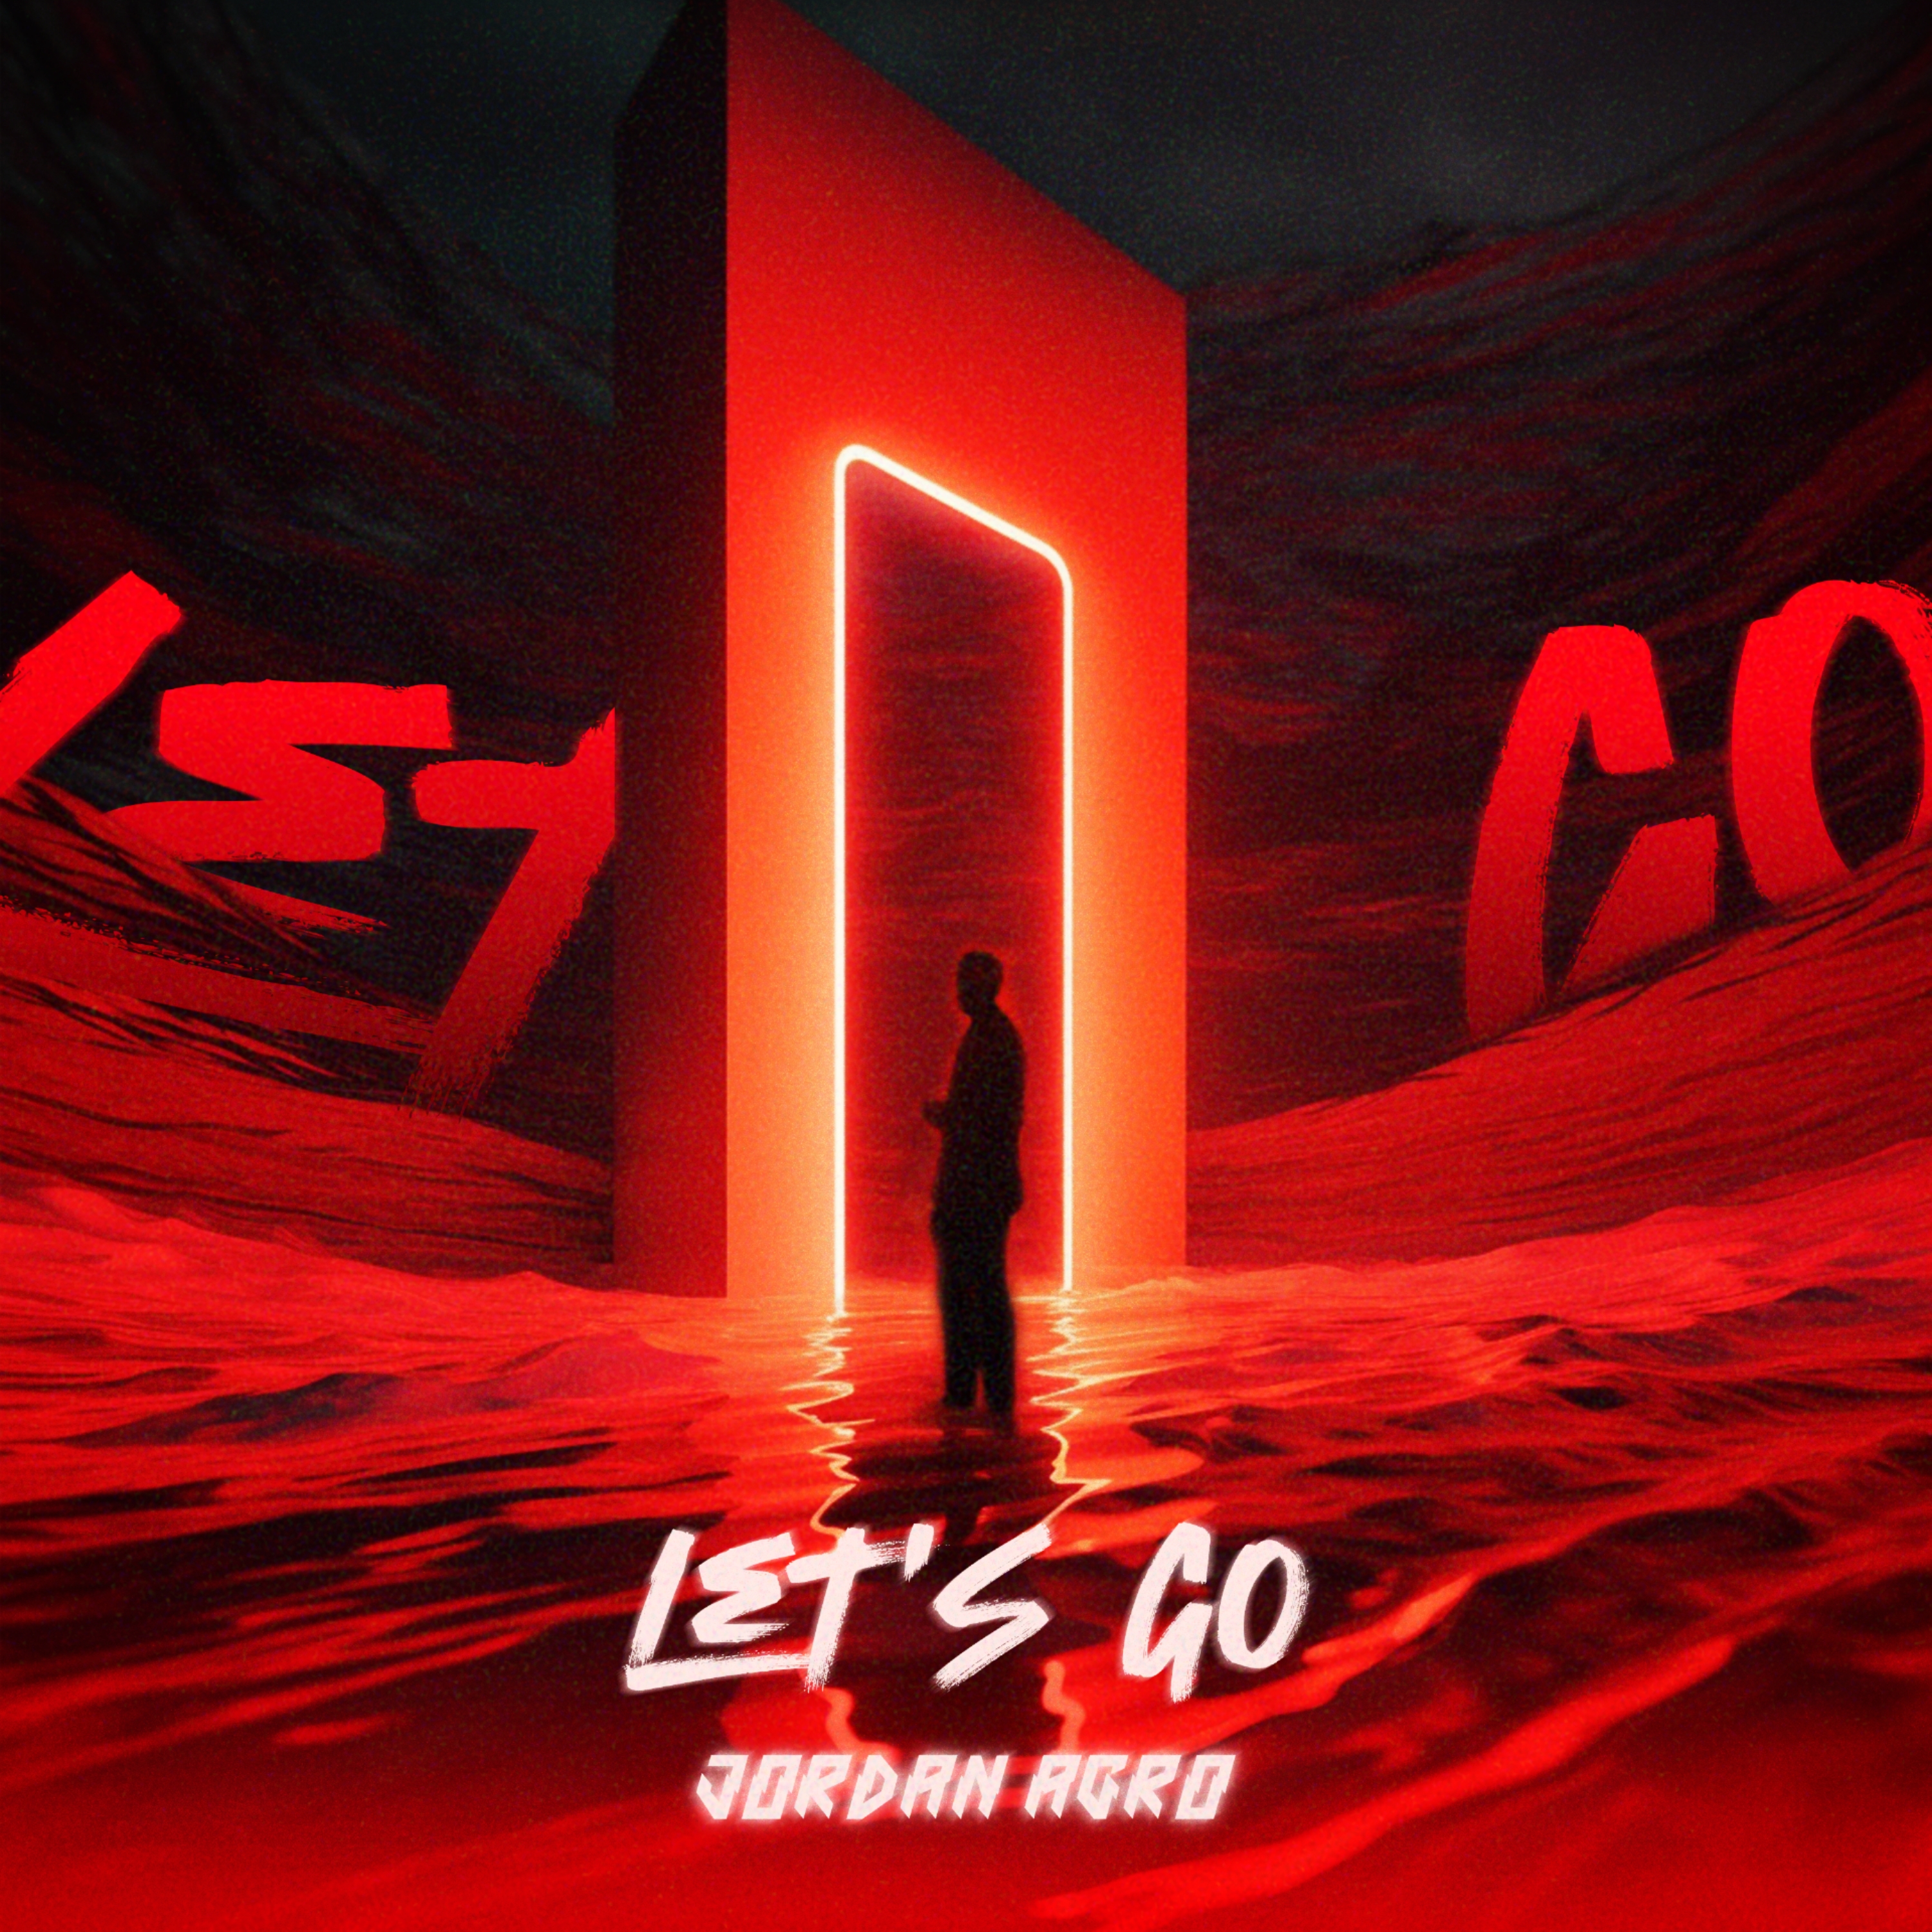 фото: Вперед, к новым высотам: Jordan Agro выпустил новый сингл «Let’s Go»